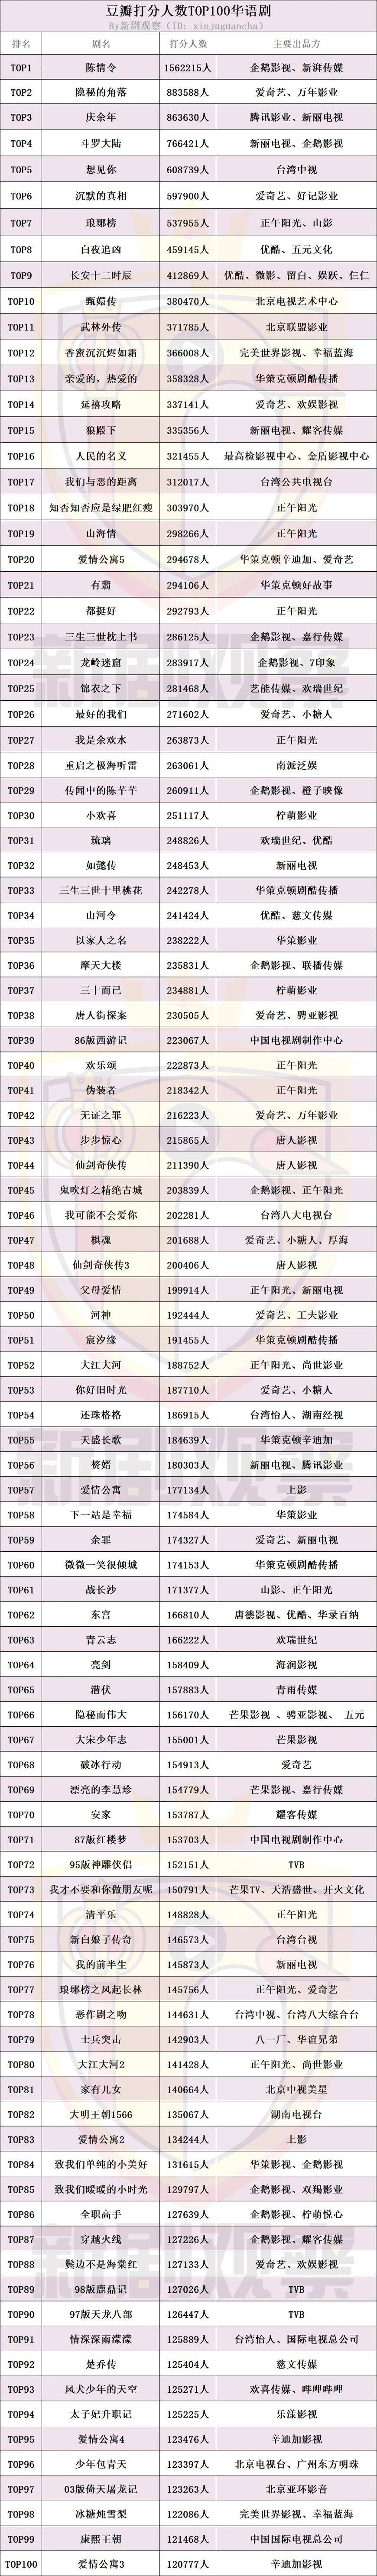 《陈情令》是截止目前唯一一部豆瓣打分人数破150万的华语电视剧,第